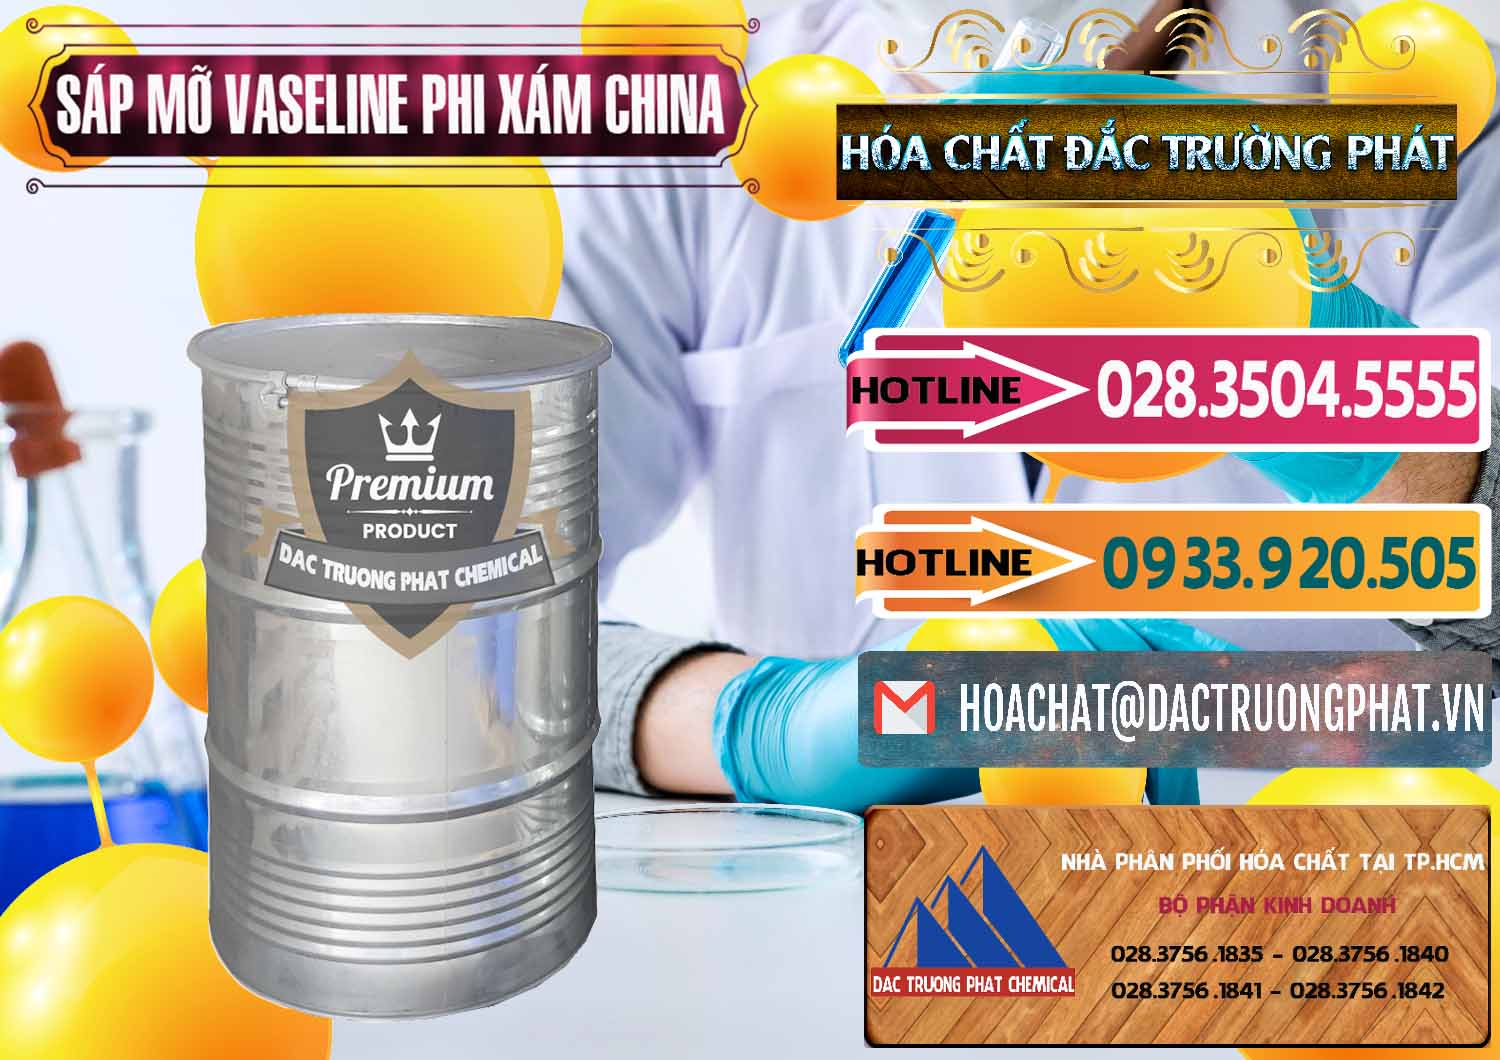 Chuyên bán _ cung ứng Sáp Mỡ Vaseline Phi Xám Trung Quốc China - 0291 - Công ty bán và phân phối hóa chất tại TP.HCM - dactruongphat.vn